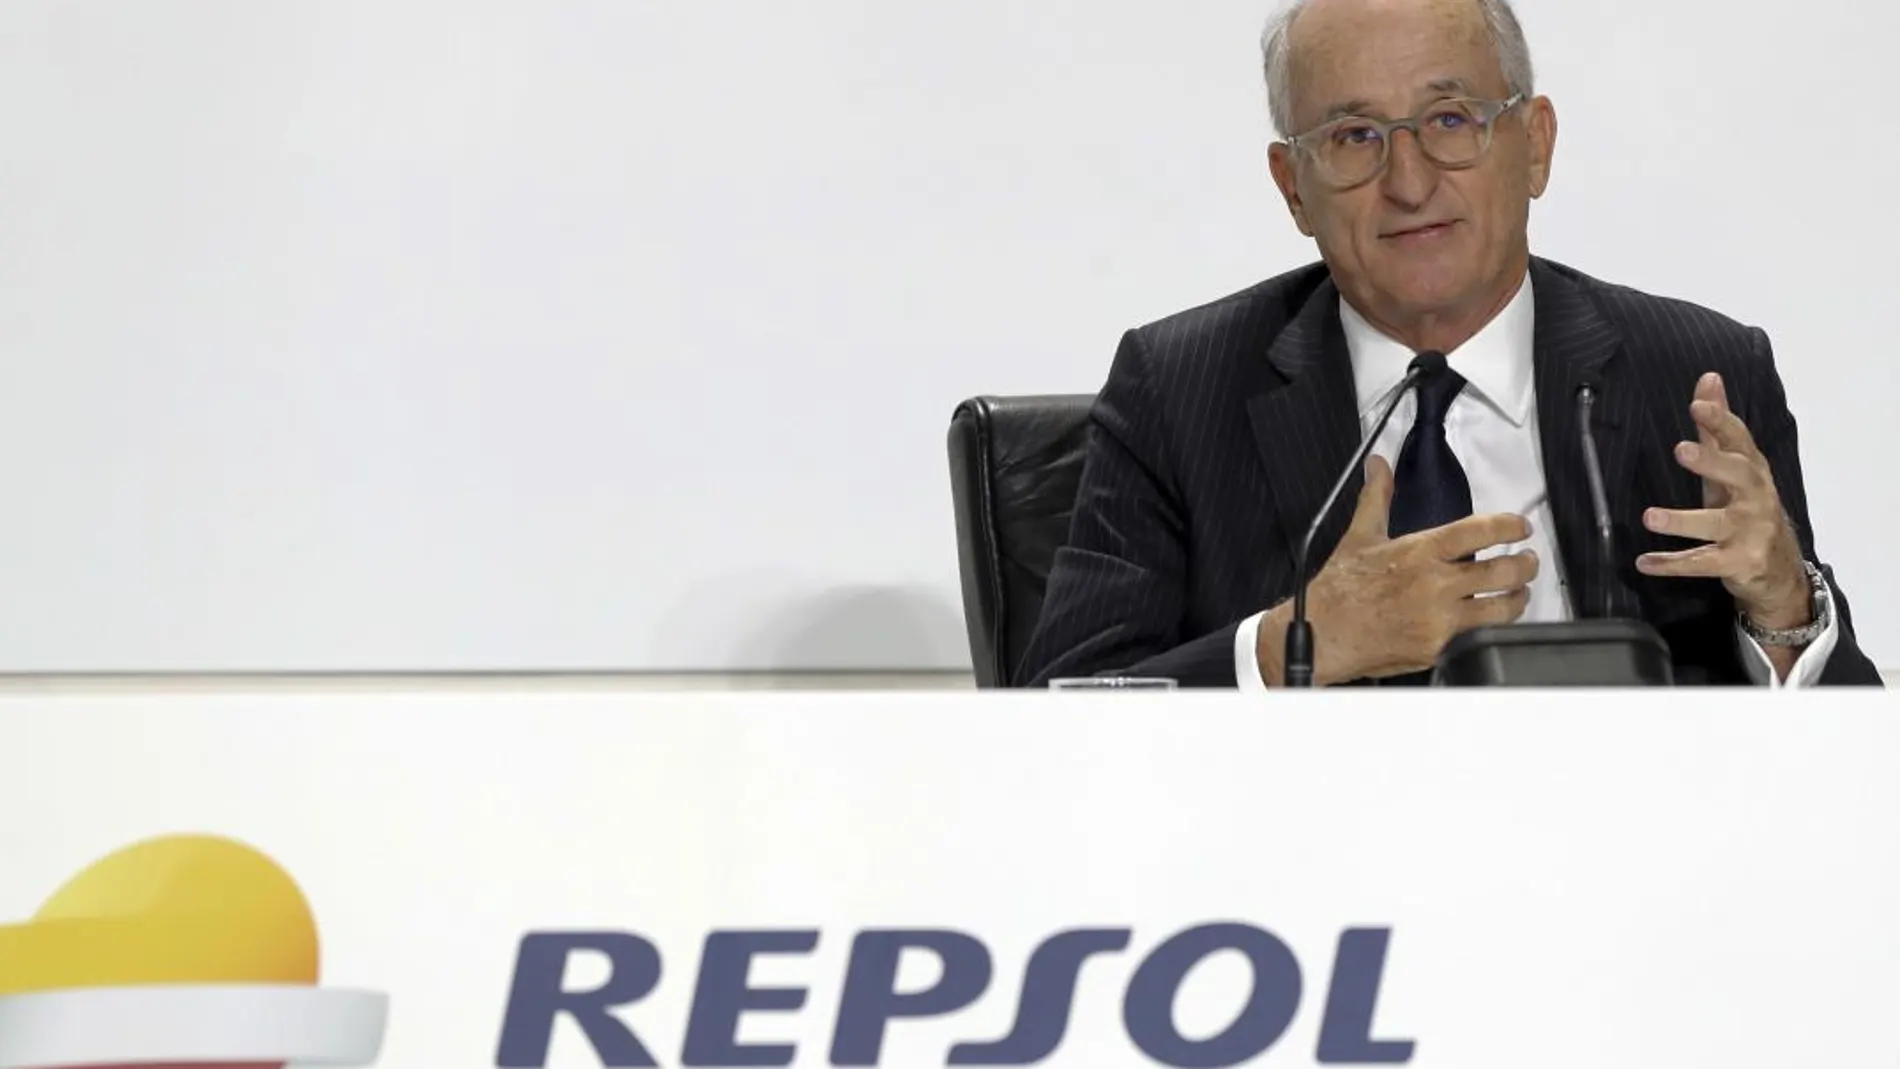 El presidente de Repsol, Antonio Brufau, durante su intervención en la junta de accionistas de la compañía / Efe